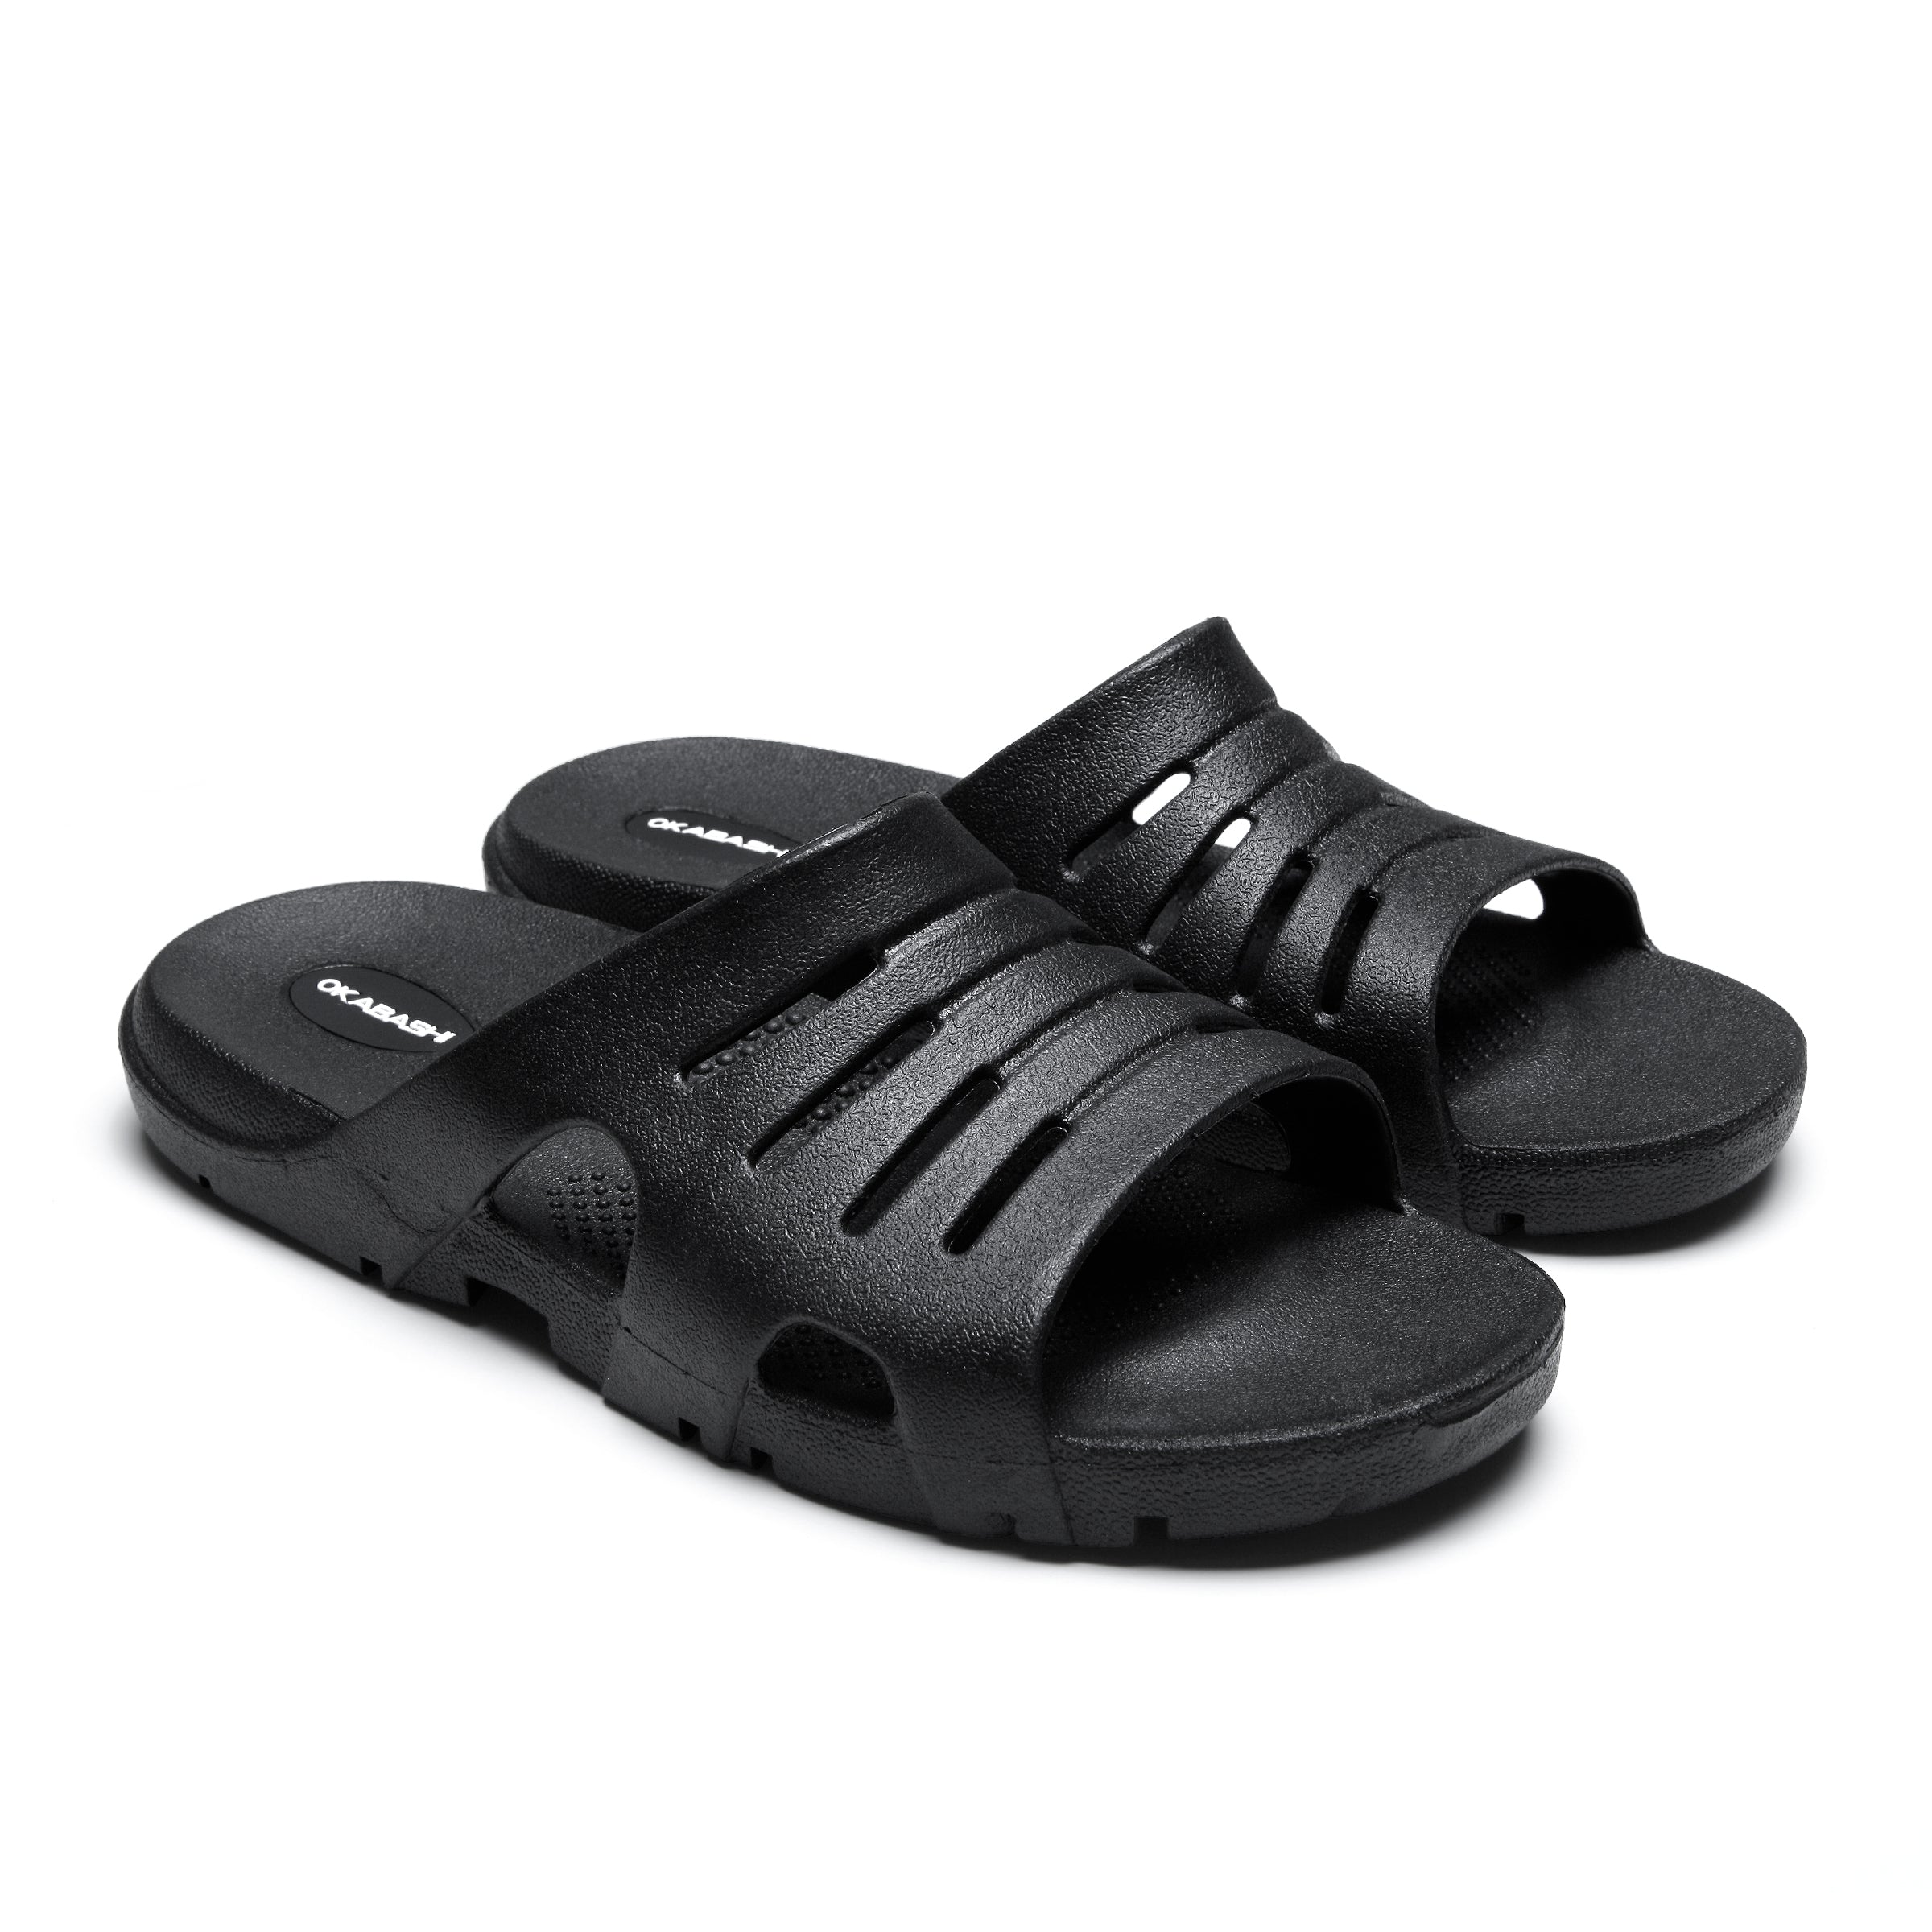 Arch Support Okabashi Eurosport Men's Slides Sandals Black